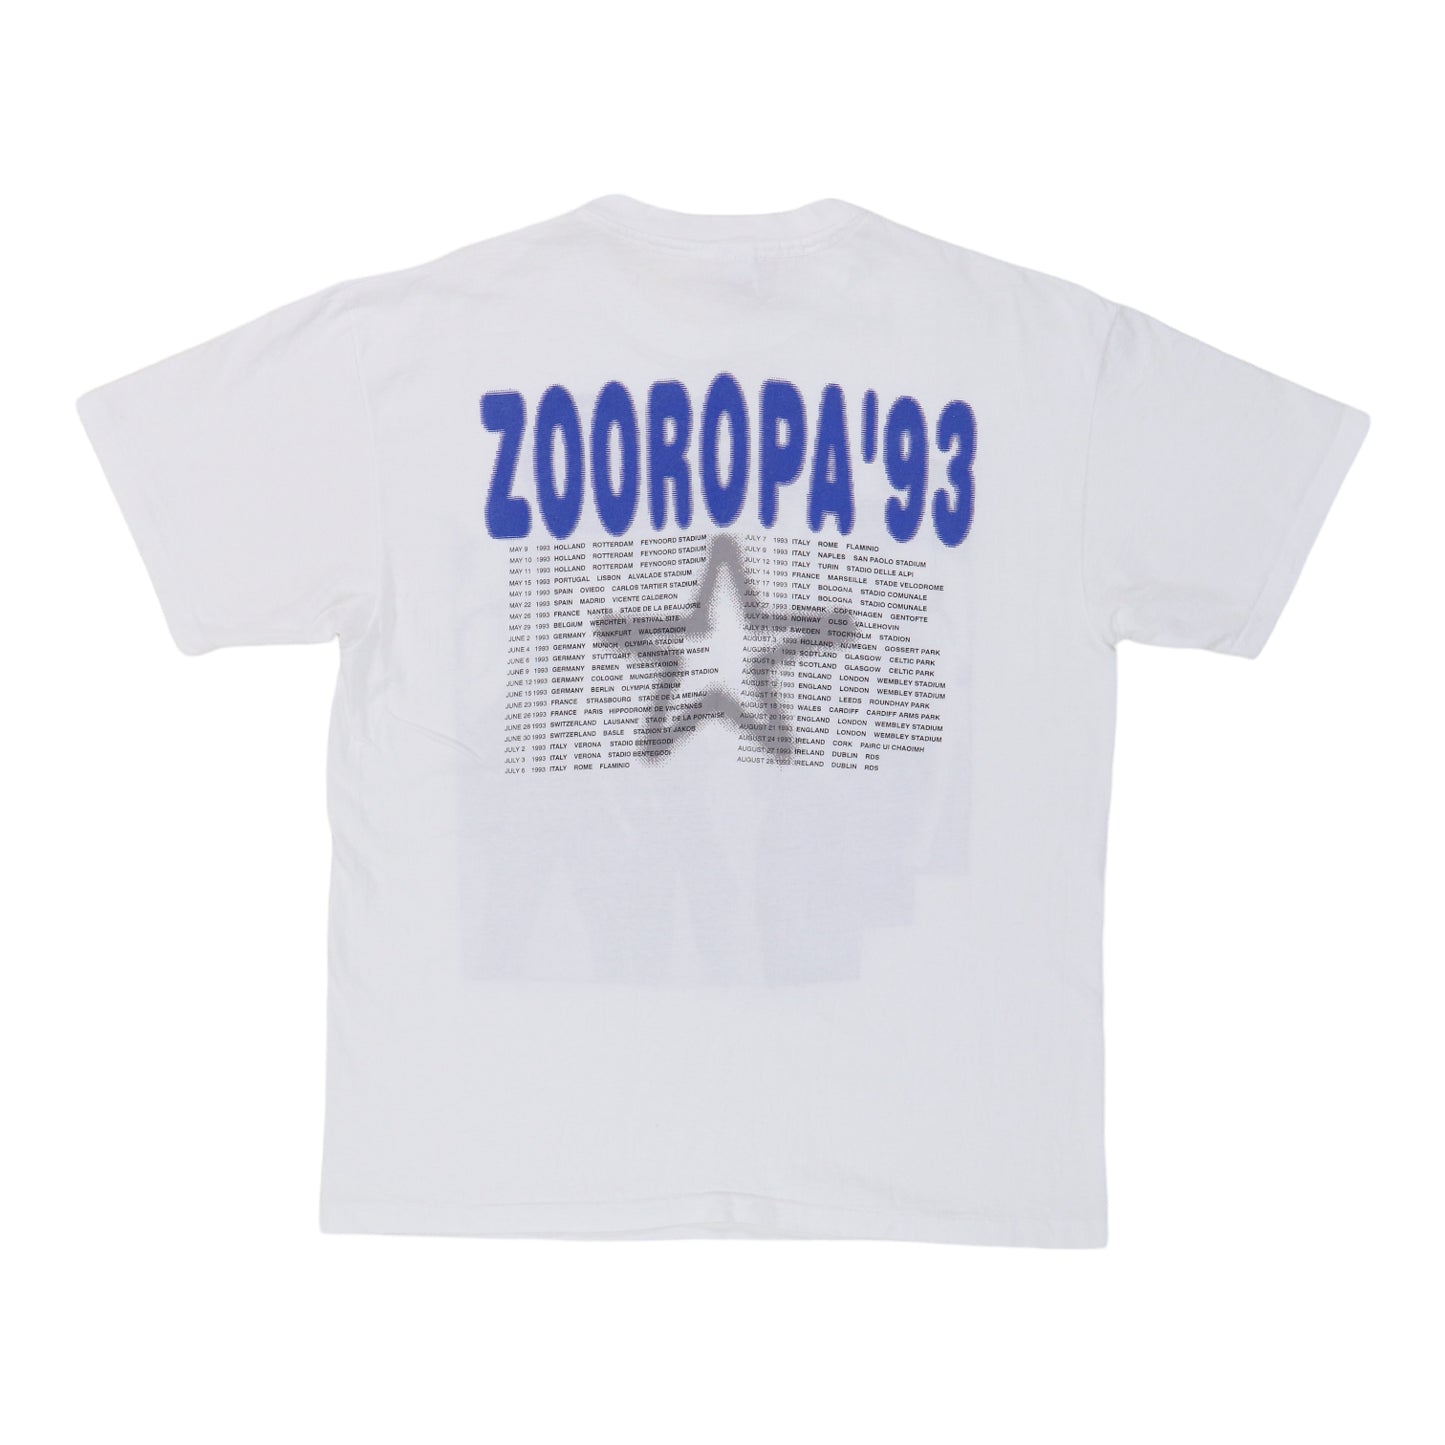 1993 U2 Zooropa Tour Shirt